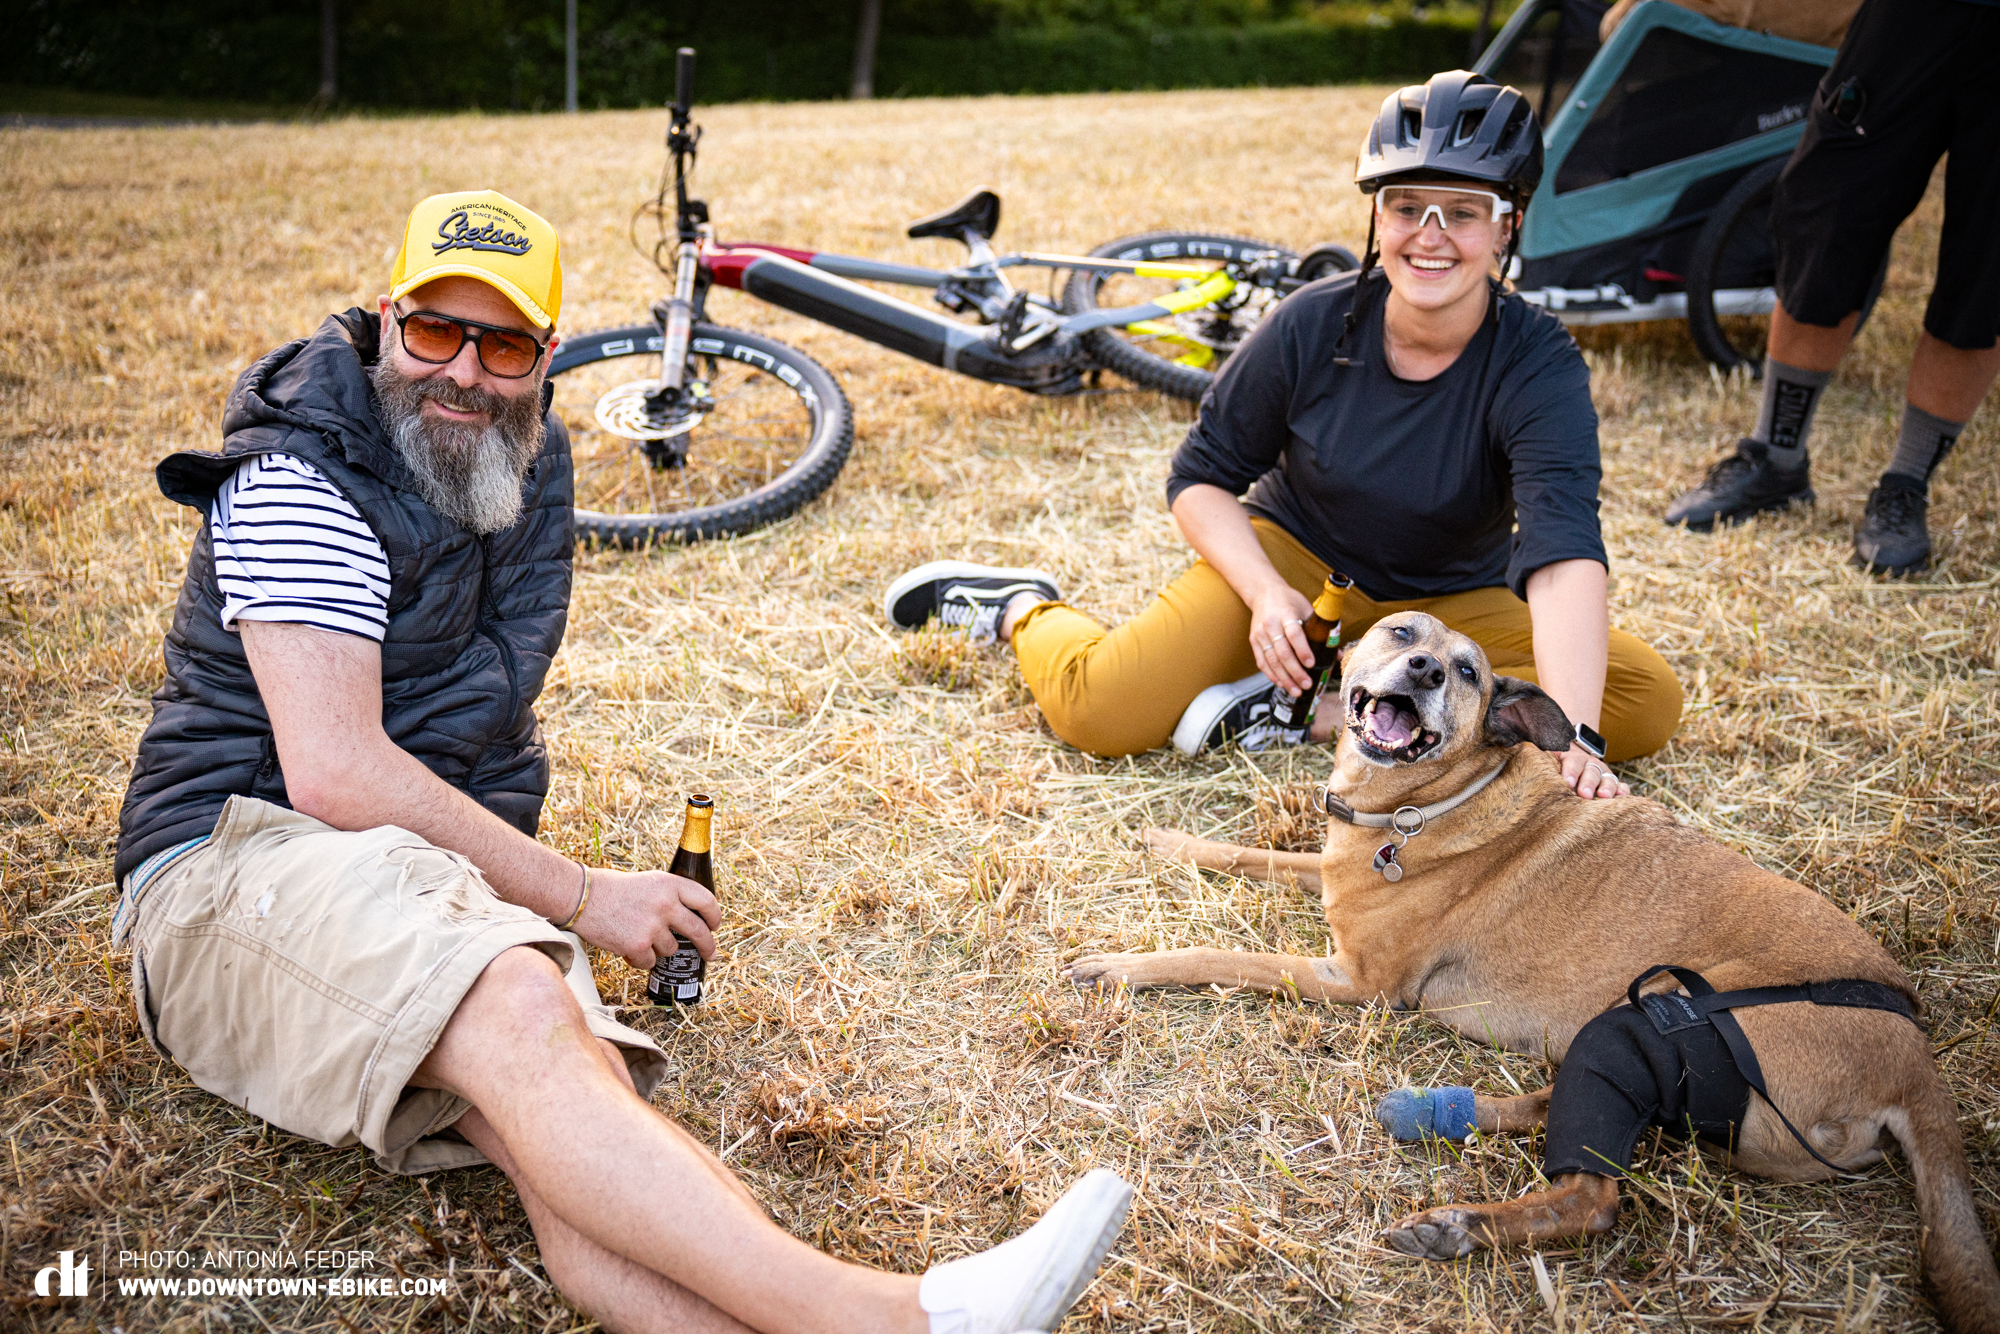 Nachdem die Tour mit dem Fahrrad-Hundeanhänger geschafft ist, sitzen Oli und Antonia mit Bruce auf dem Feld und genießen ihr Bier. Bruce schaut happy in die Kamera. 